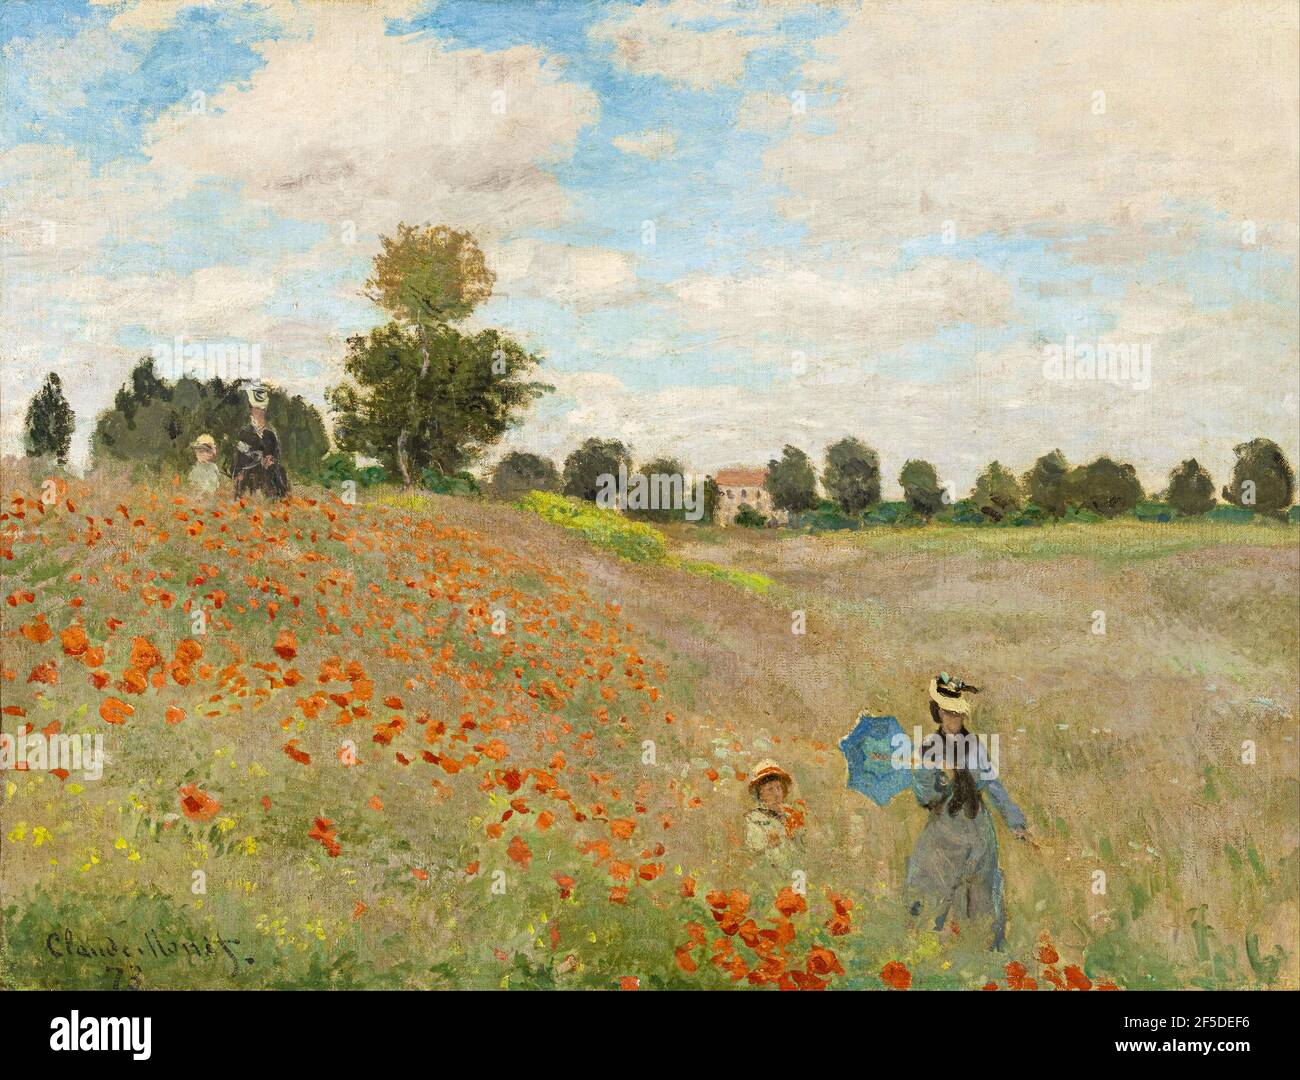 Claude Monet (1840-1926) Poppy Field, 1873, Öl auf Leinwand. Musée d'Orsay, Paris, Frankreich. Stockfoto